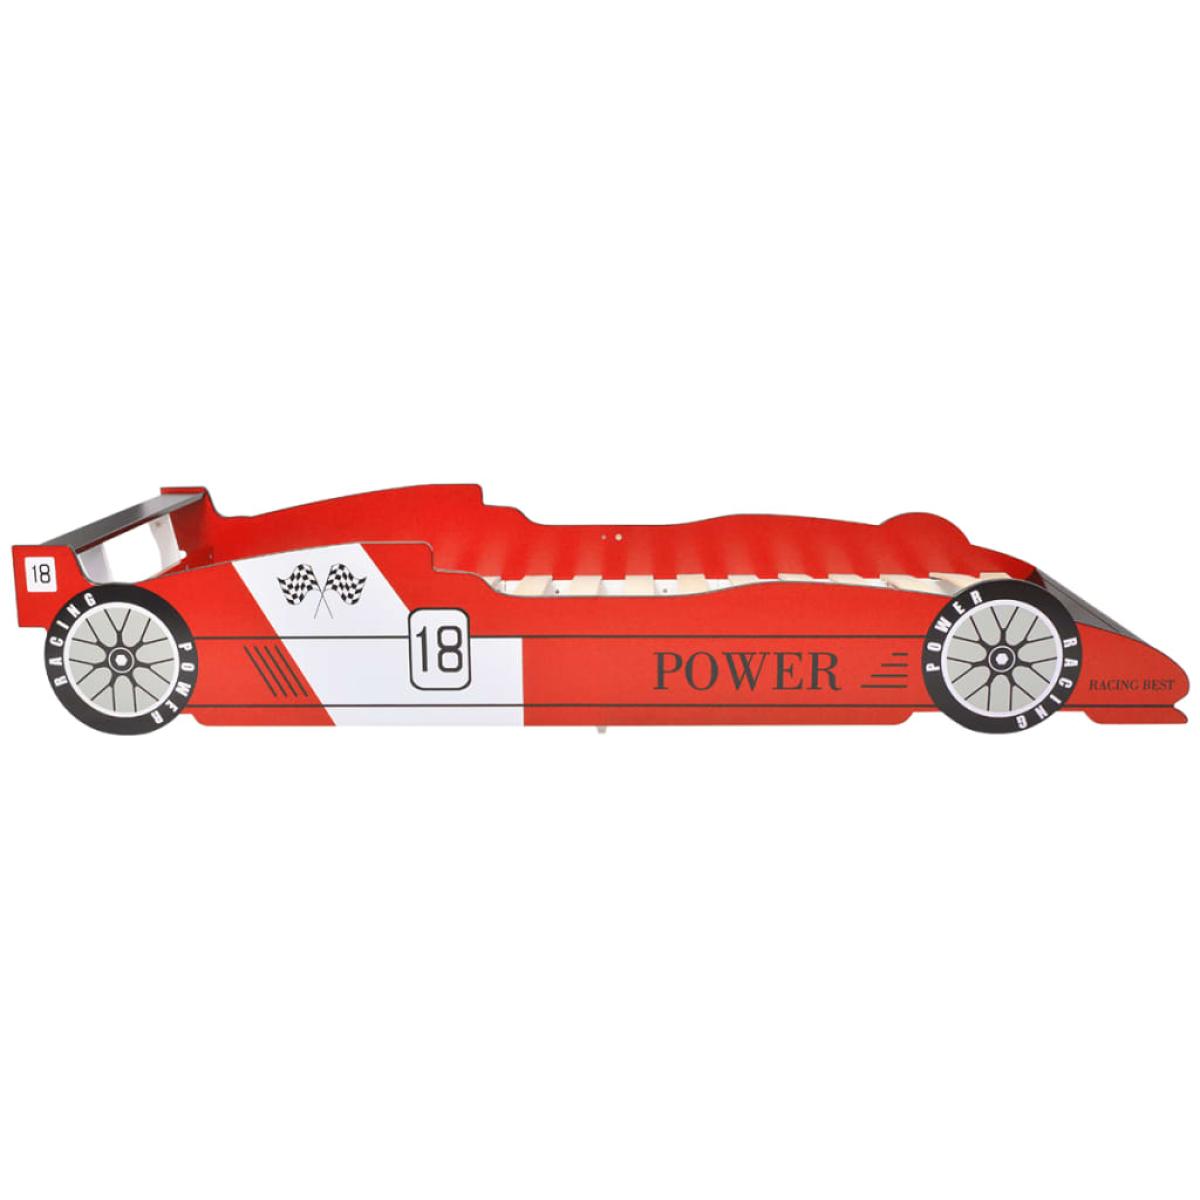 Cama con forma de coche de carreras para niños roja 90x200 cm